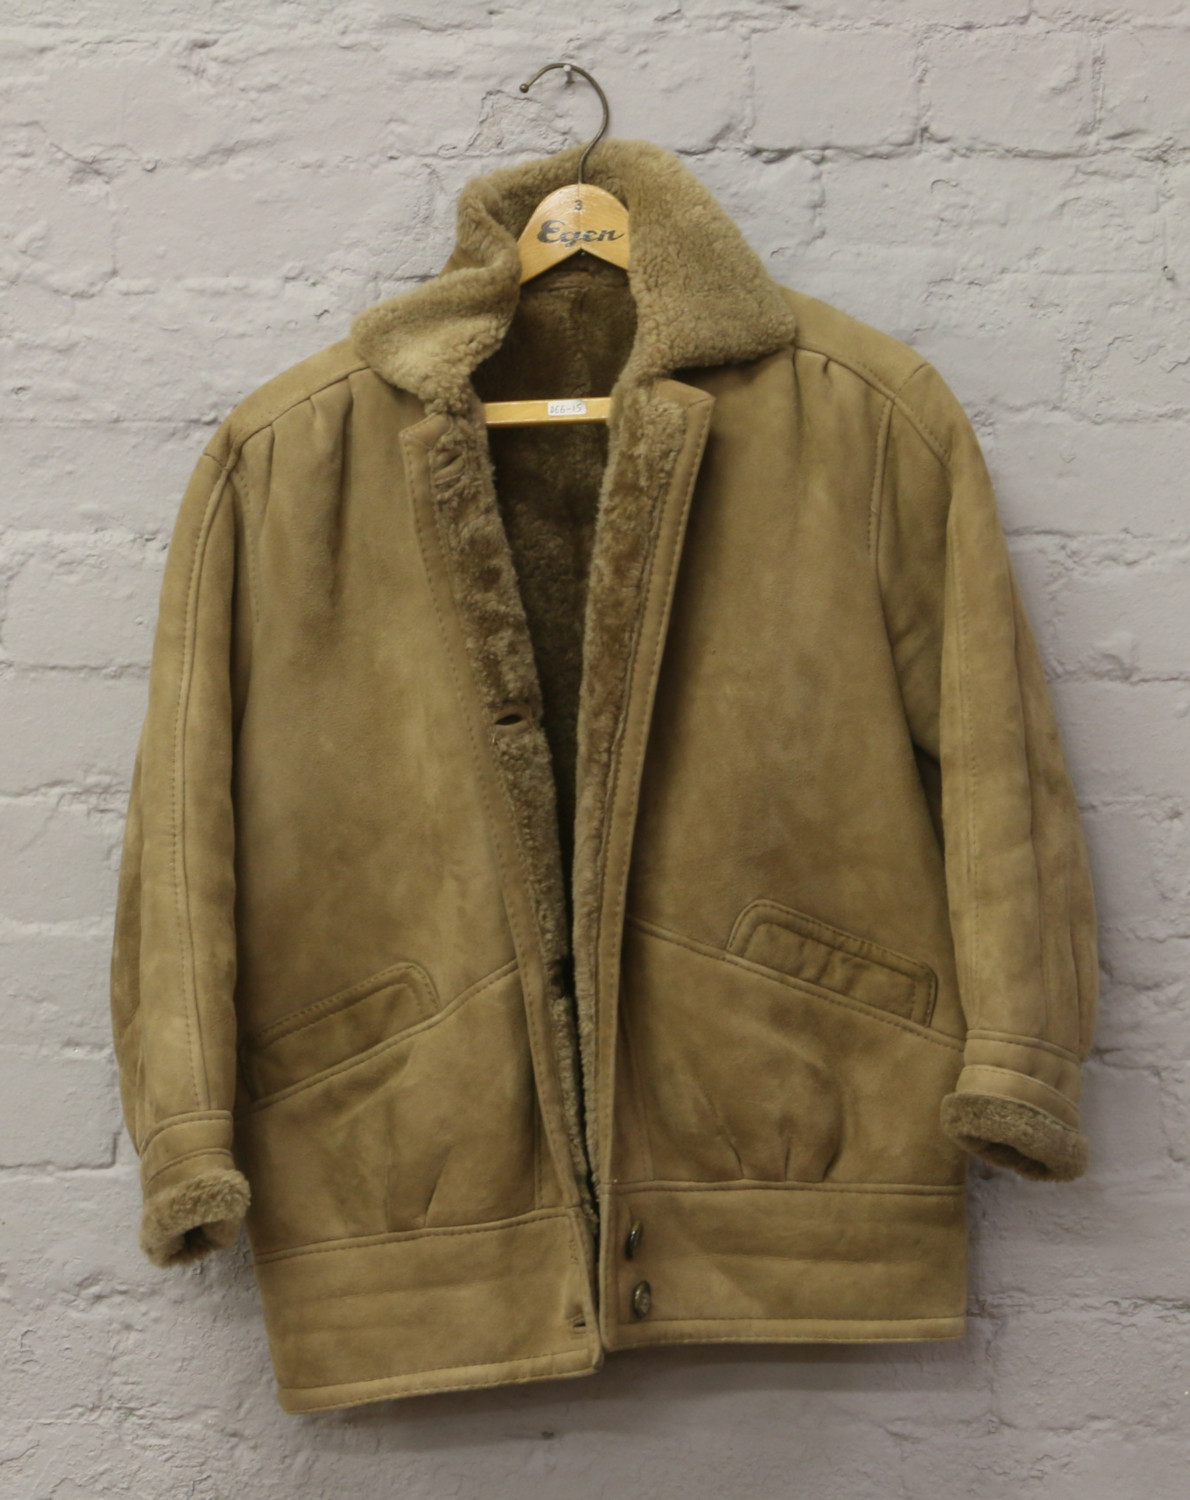 A ladies sheepskin coat, size 12.